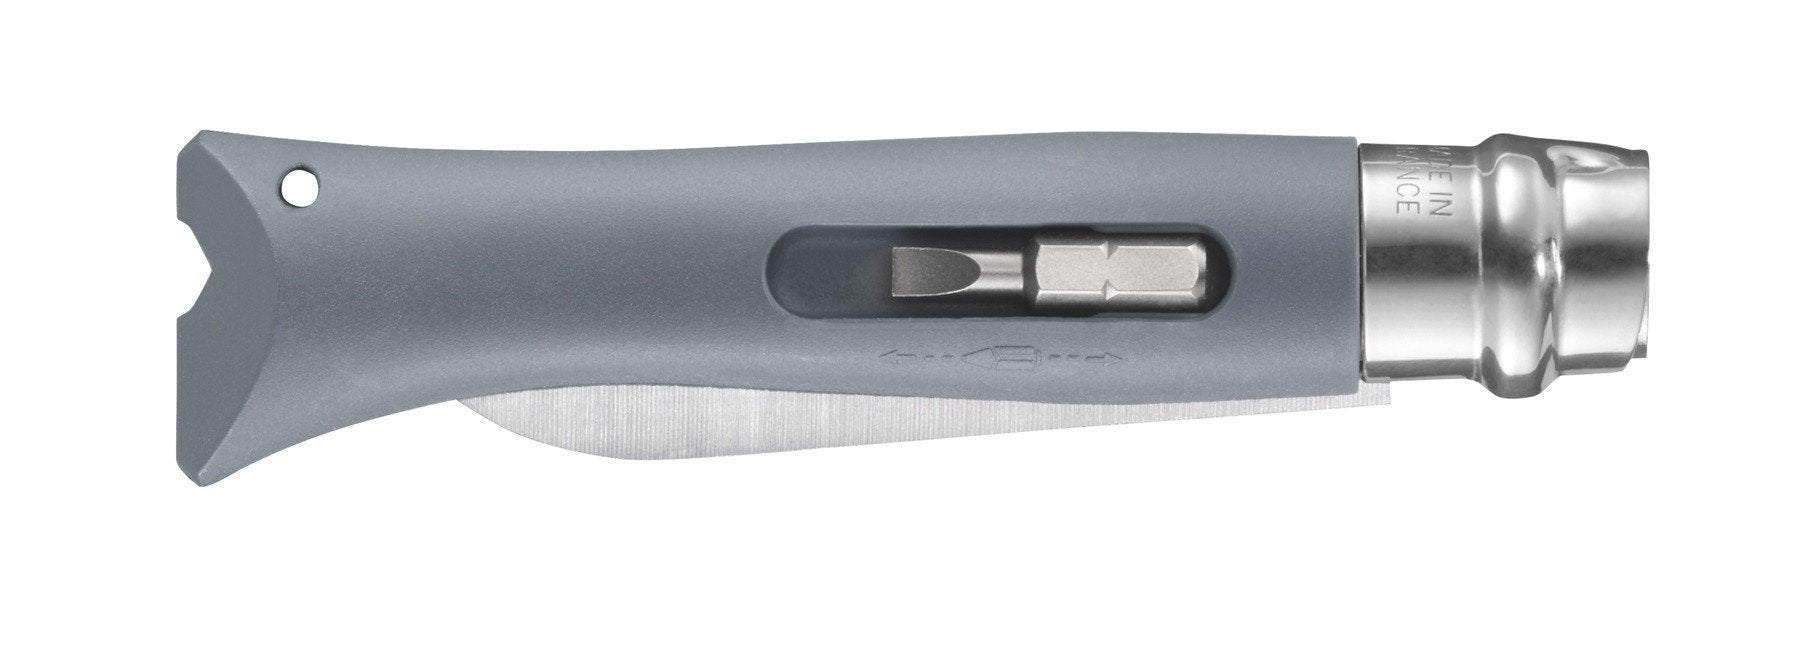 Opinel OP01792 DIY Folder Gray Knife